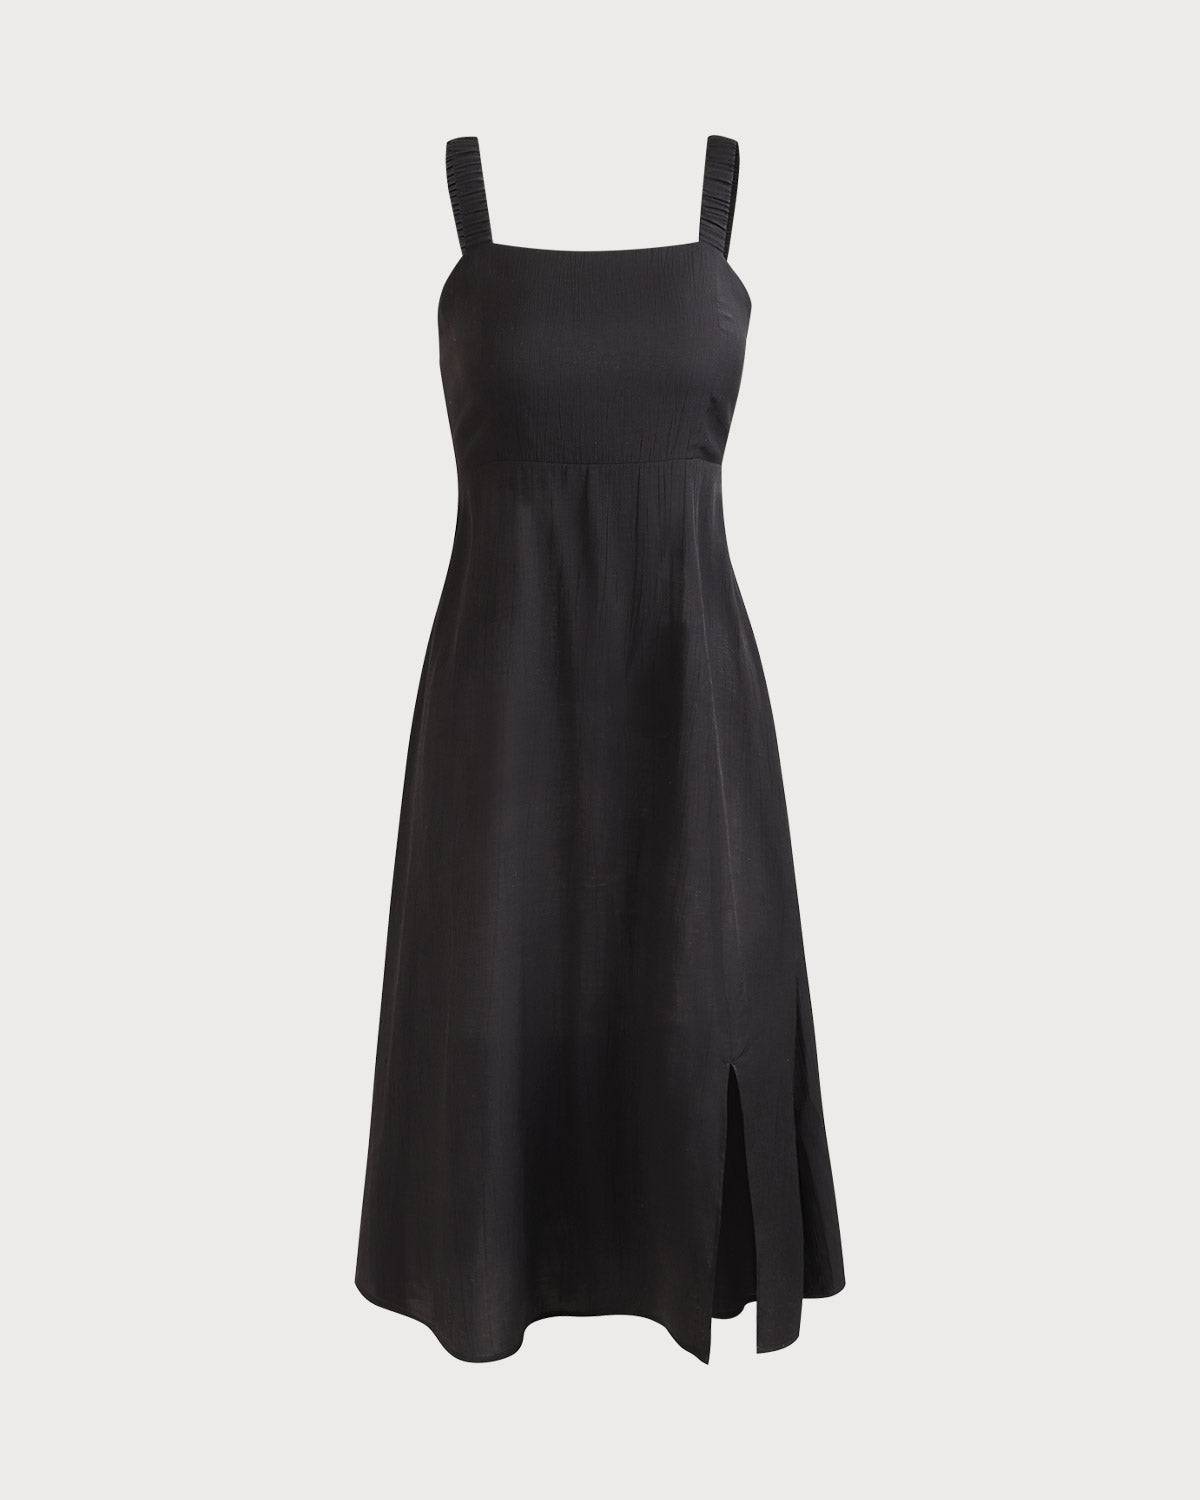 Strap Shirred Midi Dress - Women's Shirred Sleeveless Square Neck Midi ...